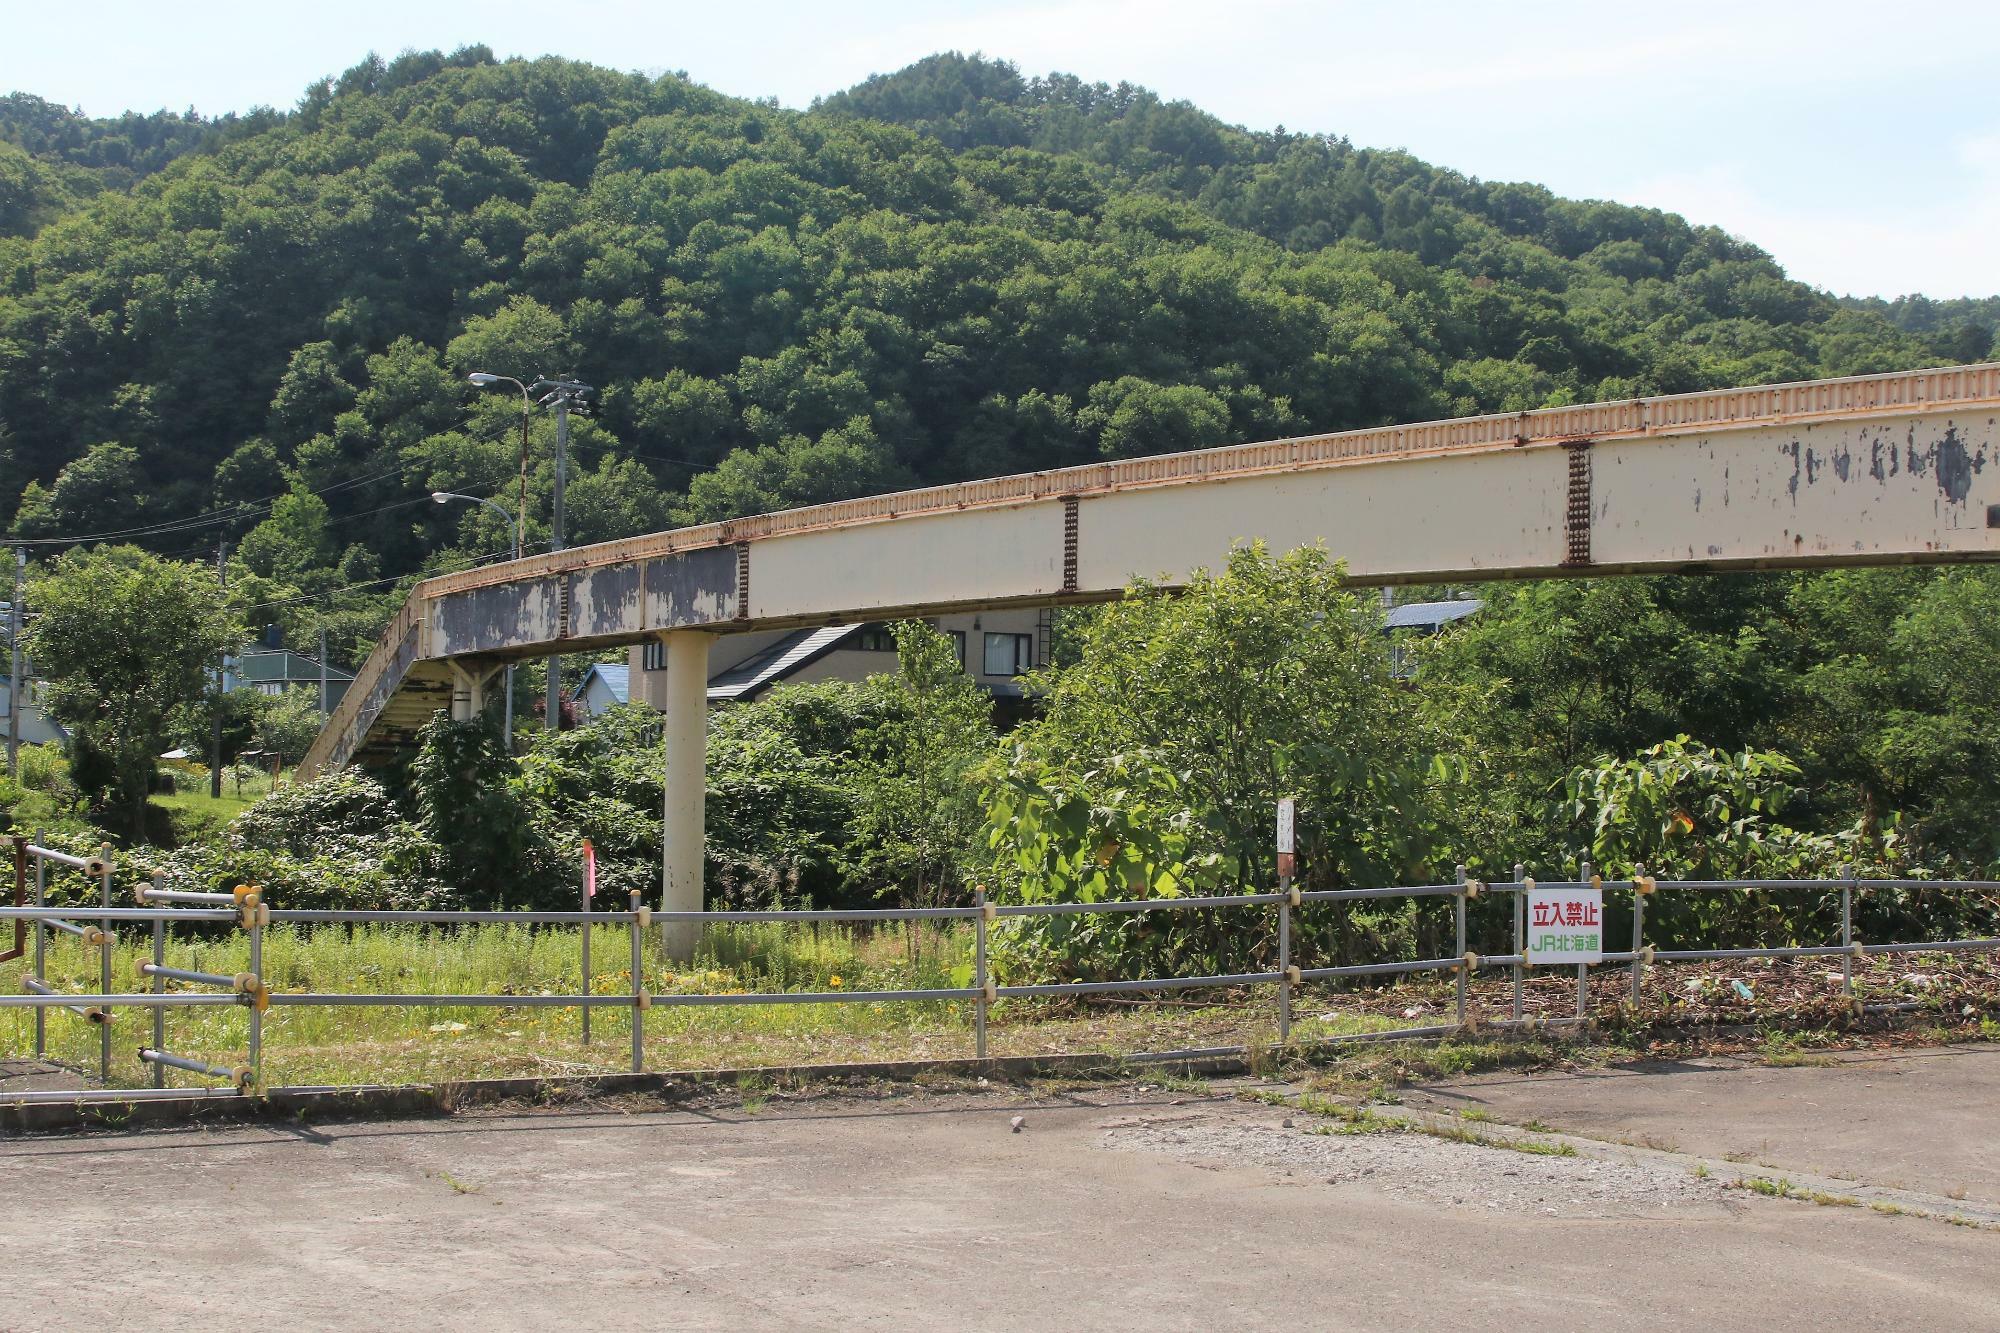 清水沢駅跡にある集落を結ぶ跨線橋